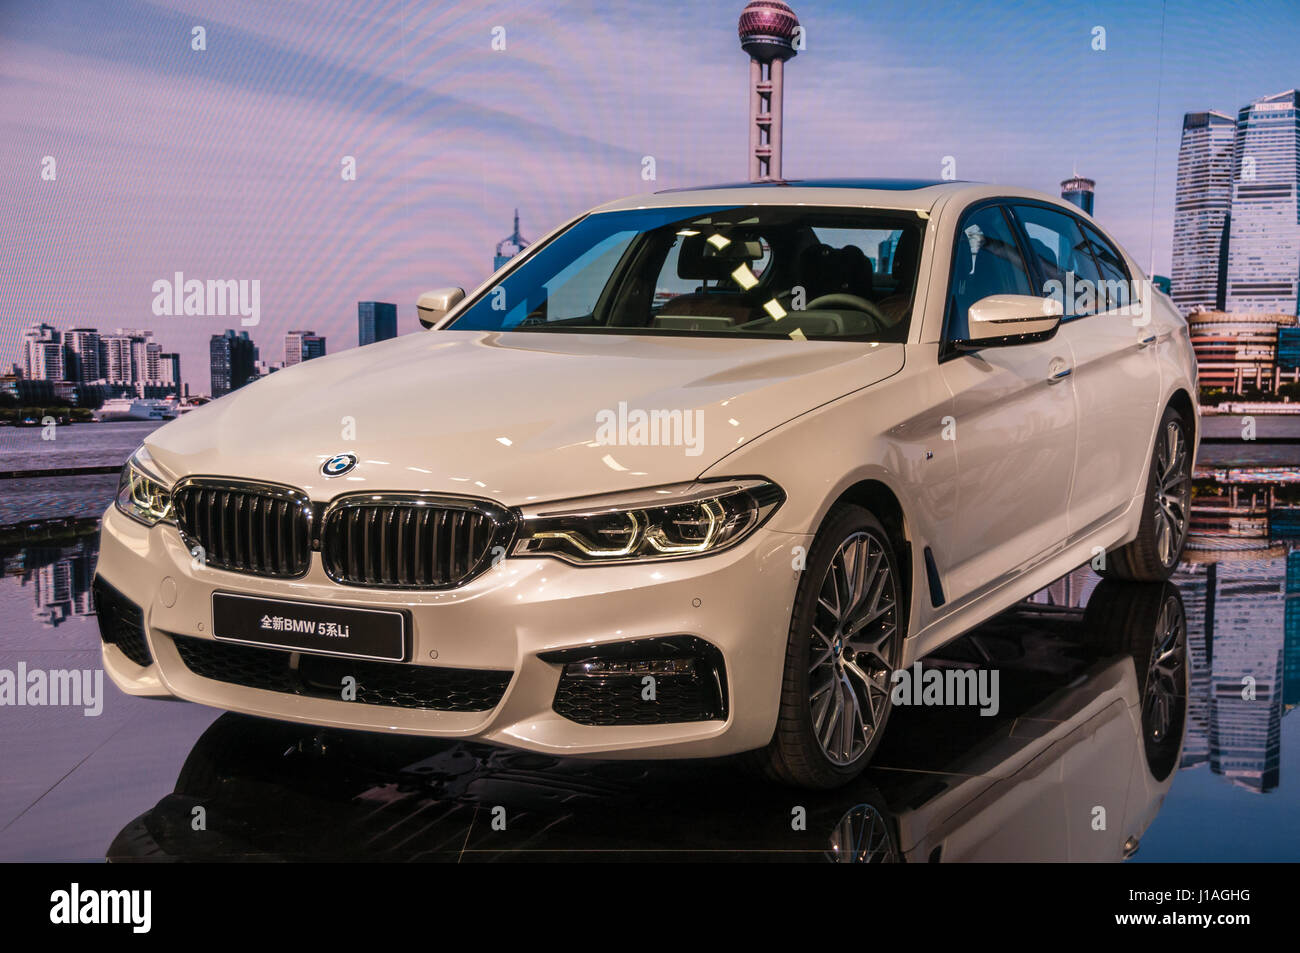 WORLD PREMIERE: The 2017 BMW G30 5 Series